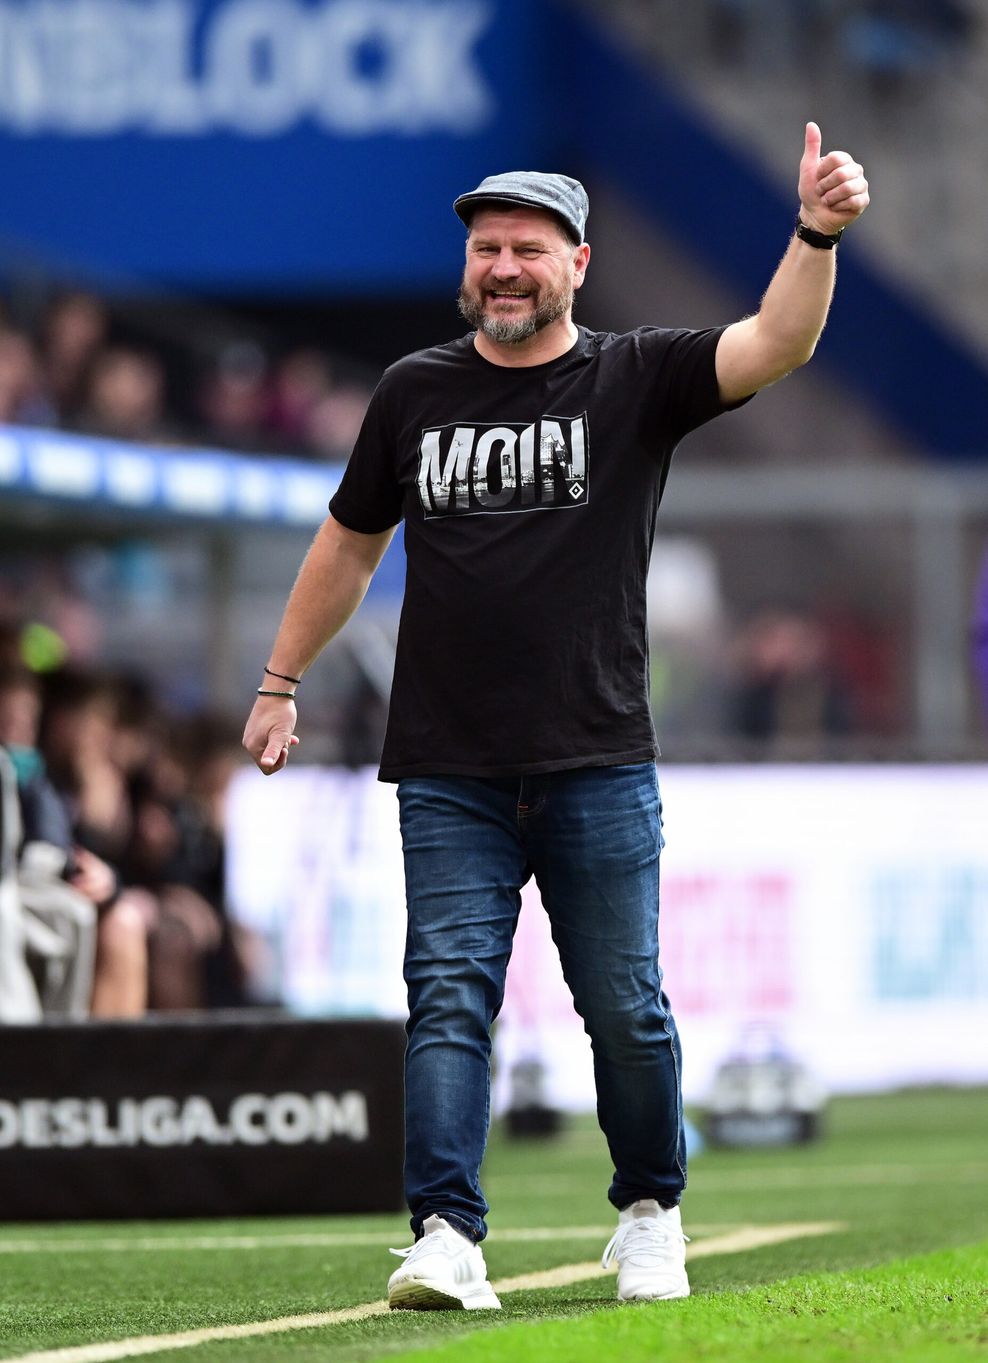 HSV-Trainer Baumgart hebt am Spielfeldrand lächelnd den Daumen